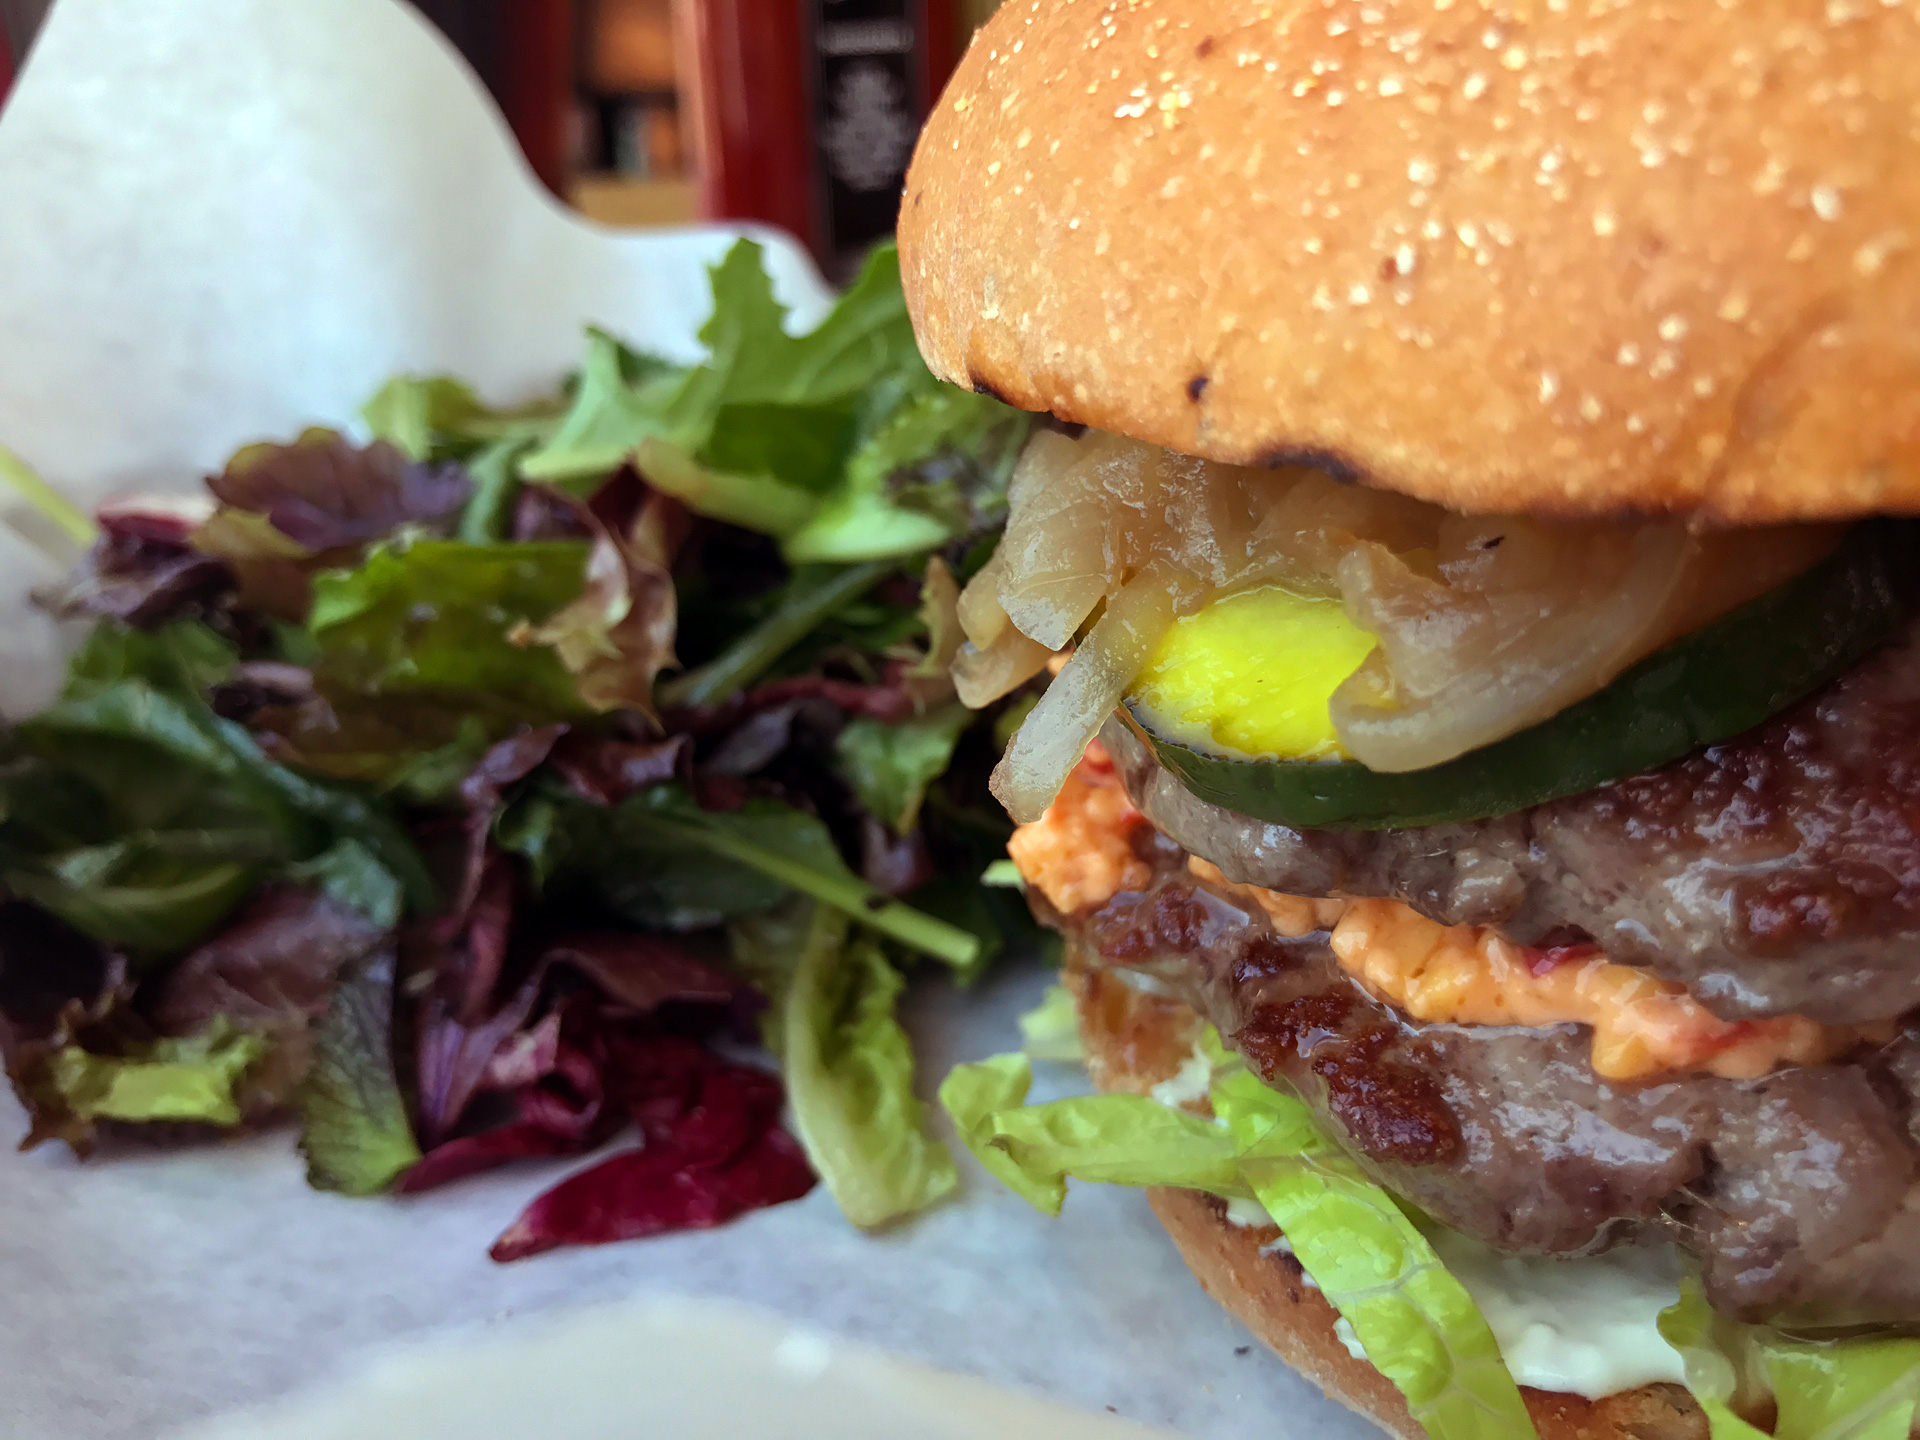 Clove and Hoof’s double-decker grass-fed burger.